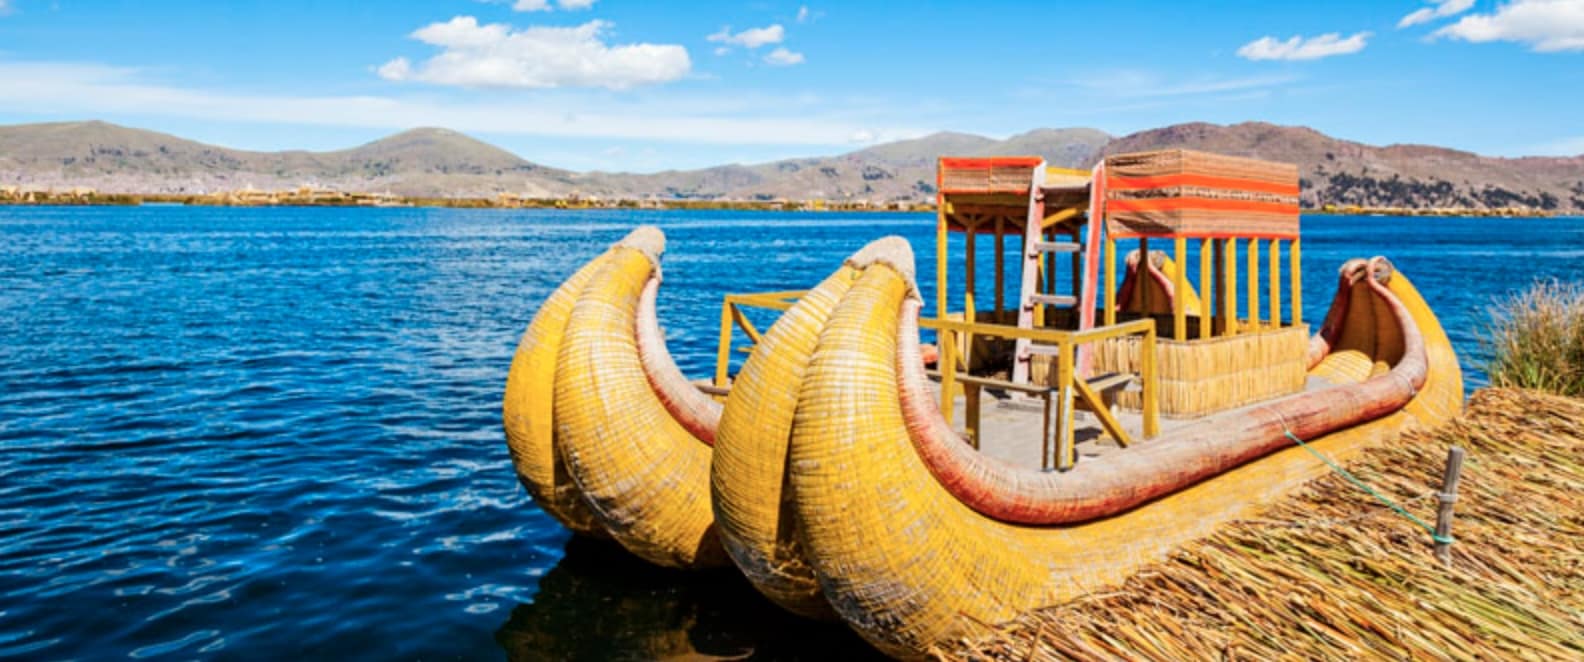 Titicaca-Søen verdens højeste sø